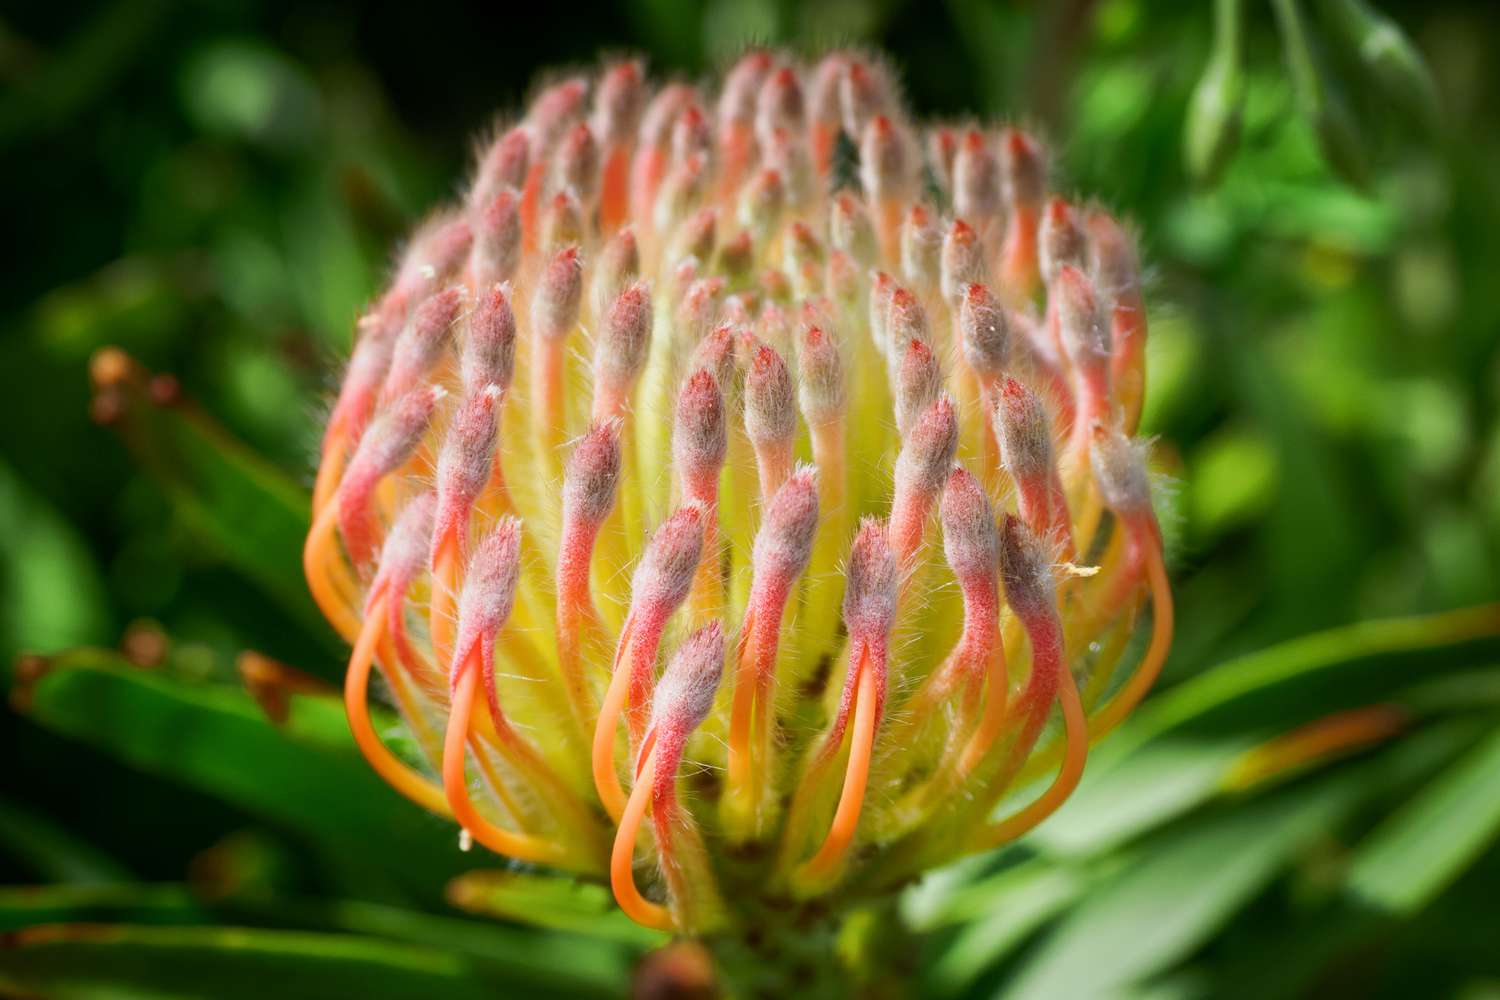 Protea-Pflanze mit entfalteten orange-gelben Hochblättern in Nahaufnahme